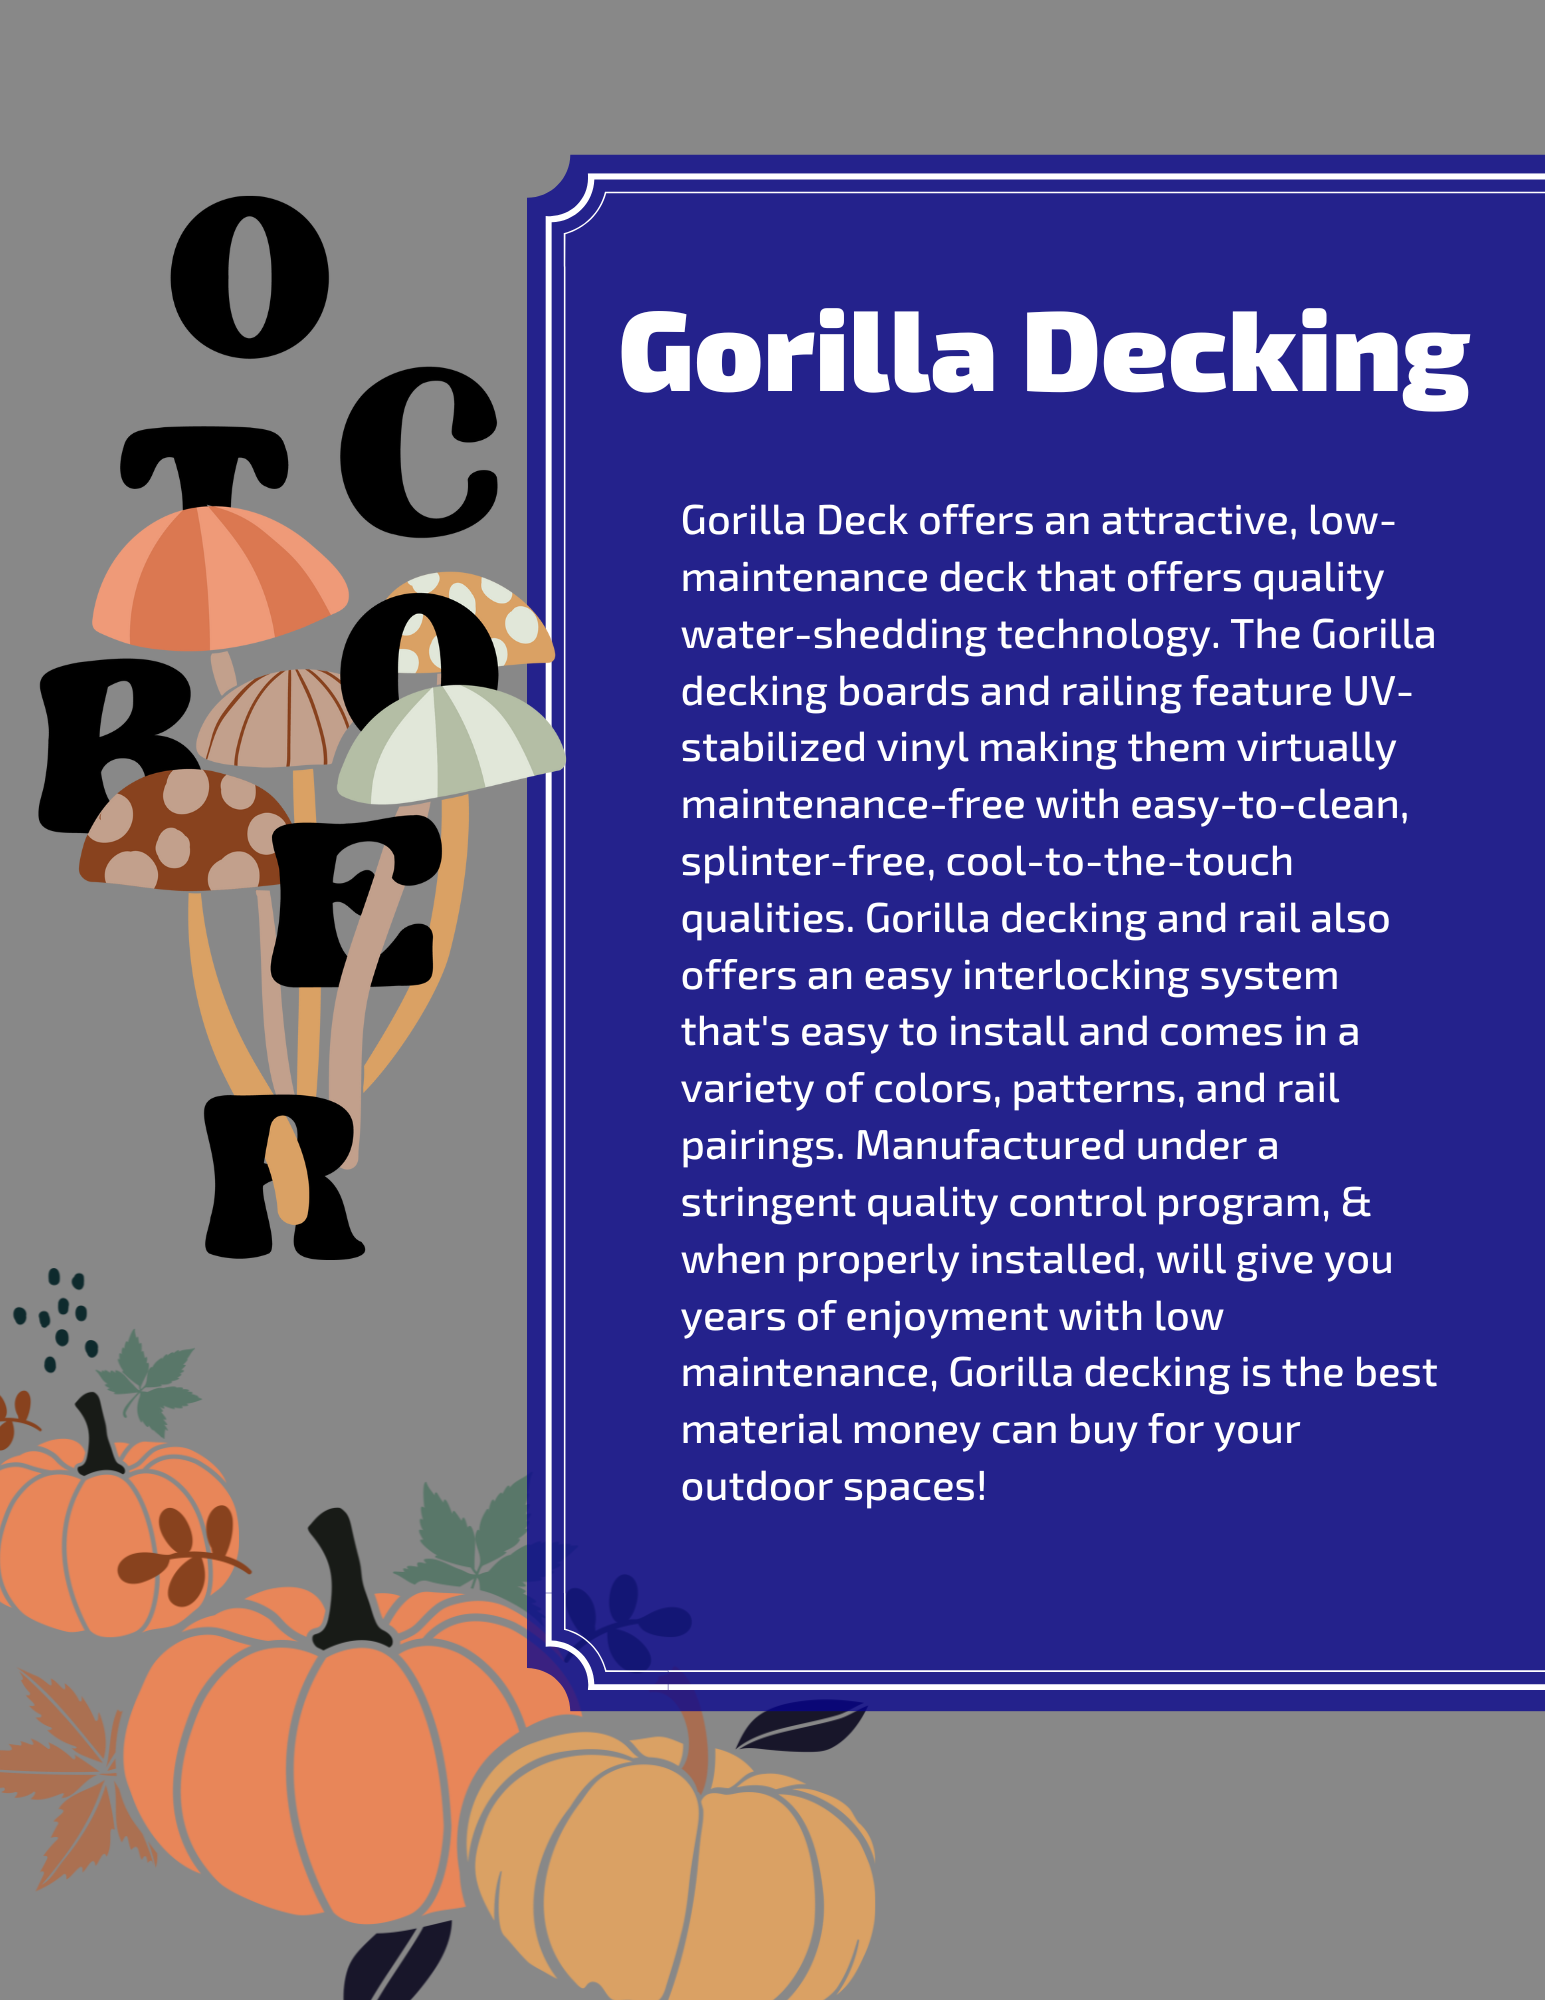 Gorilla Decking